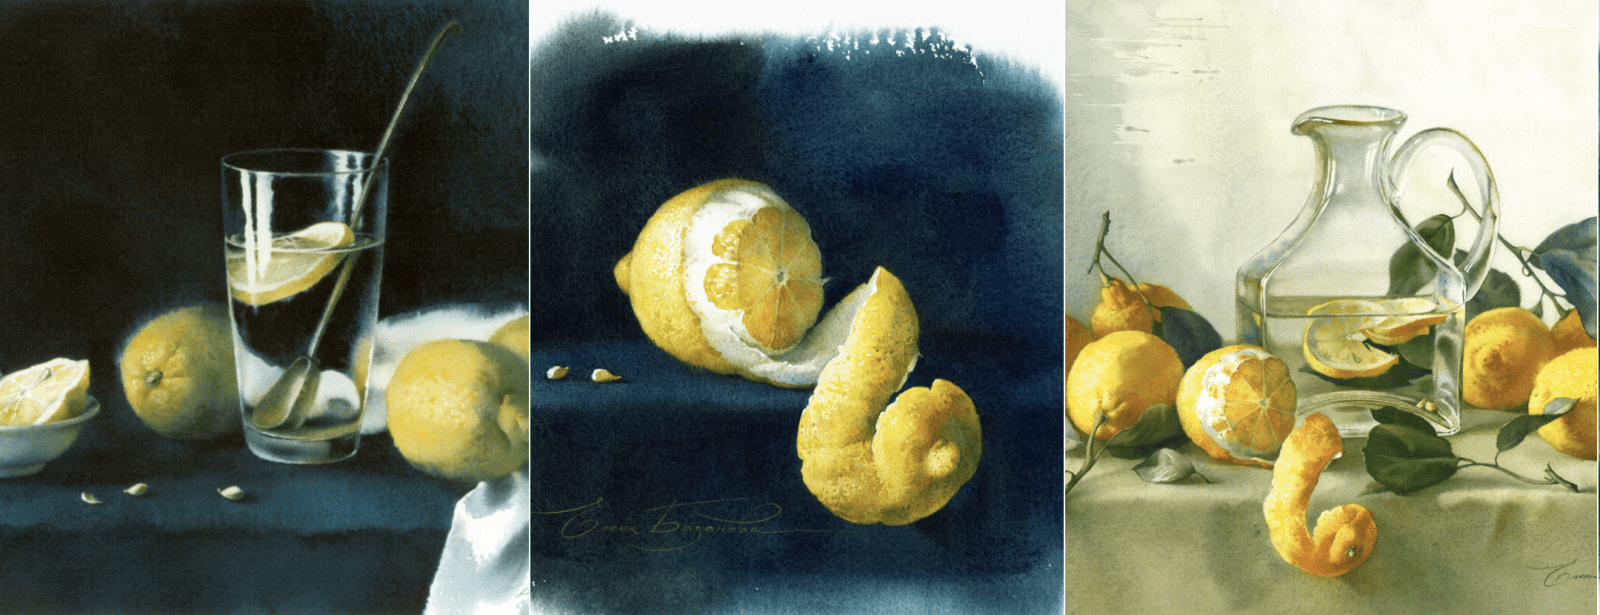 Изображение [Елена Базанова] [lectoroom] Голландский натюрморт. Бокал воды и лимон акварелью (2021) в посте 245642